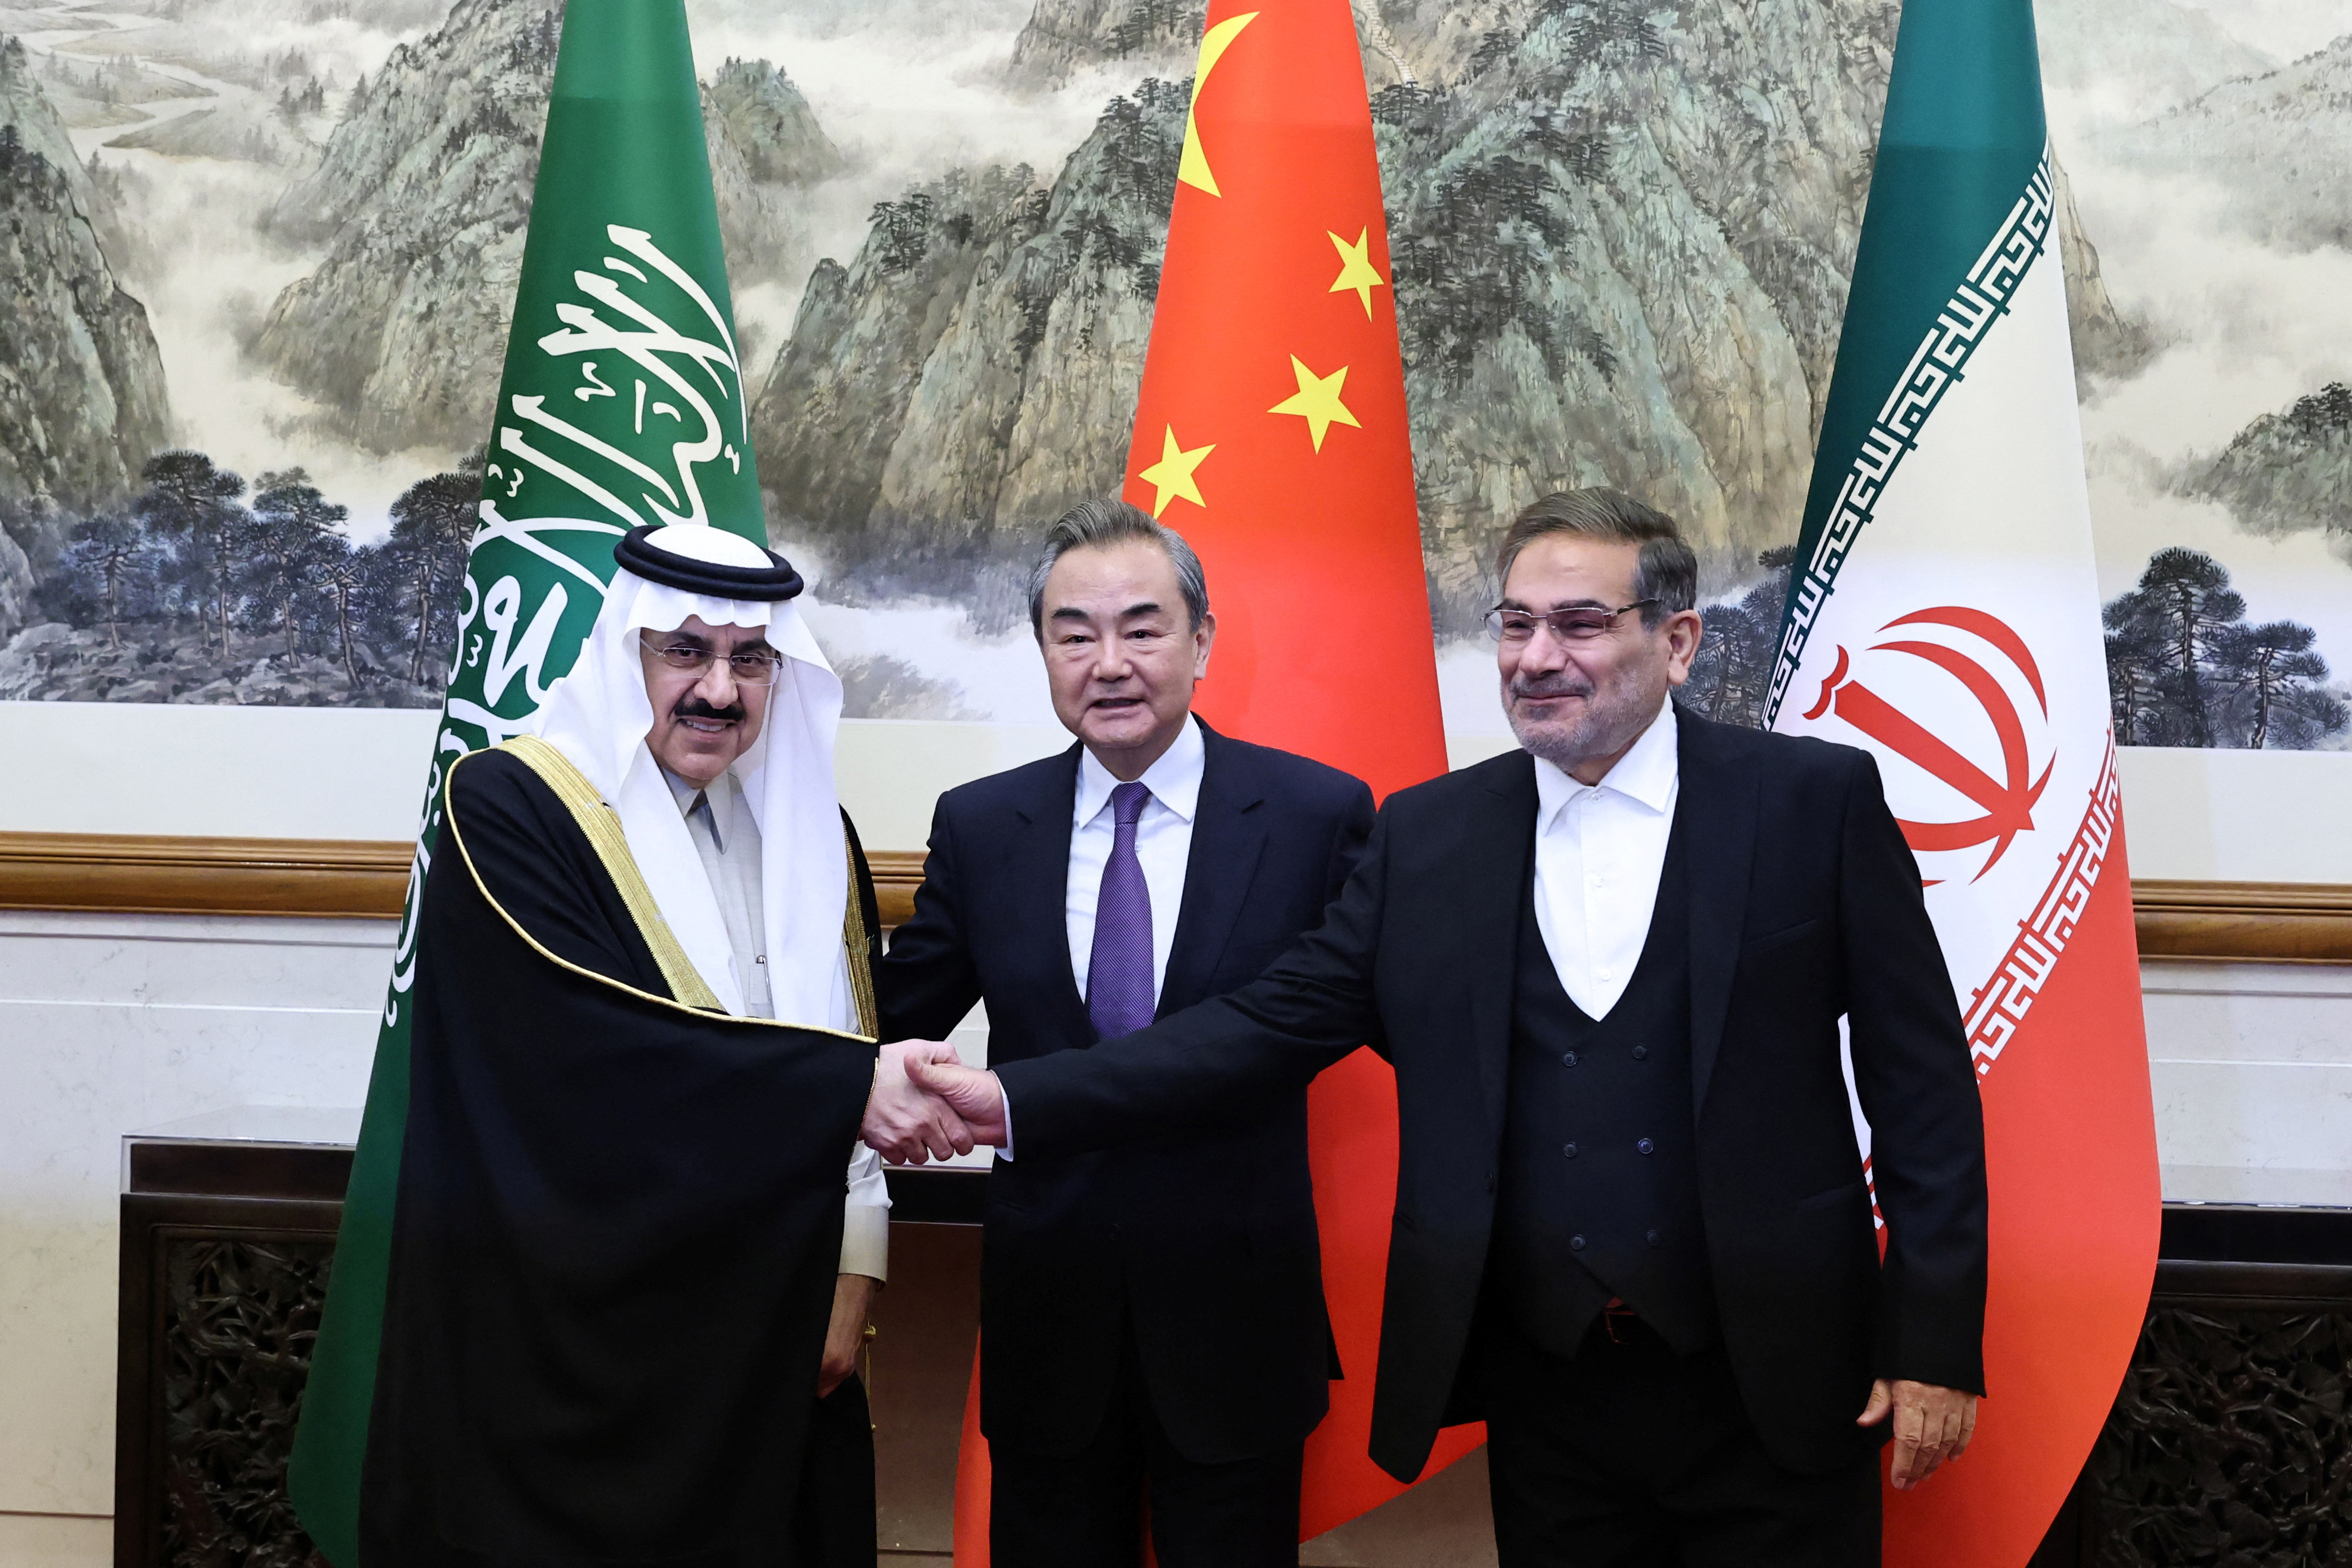 China ha demostrado su papel como mediador en otras crisis internacionales, como la tensión entre Arabia Saudita e Irán o el conflicto entre Israel y Palestina. Con esto, China quiere proyectar una imagen de liderazgo responsable y constructivo en el escenario mundial.